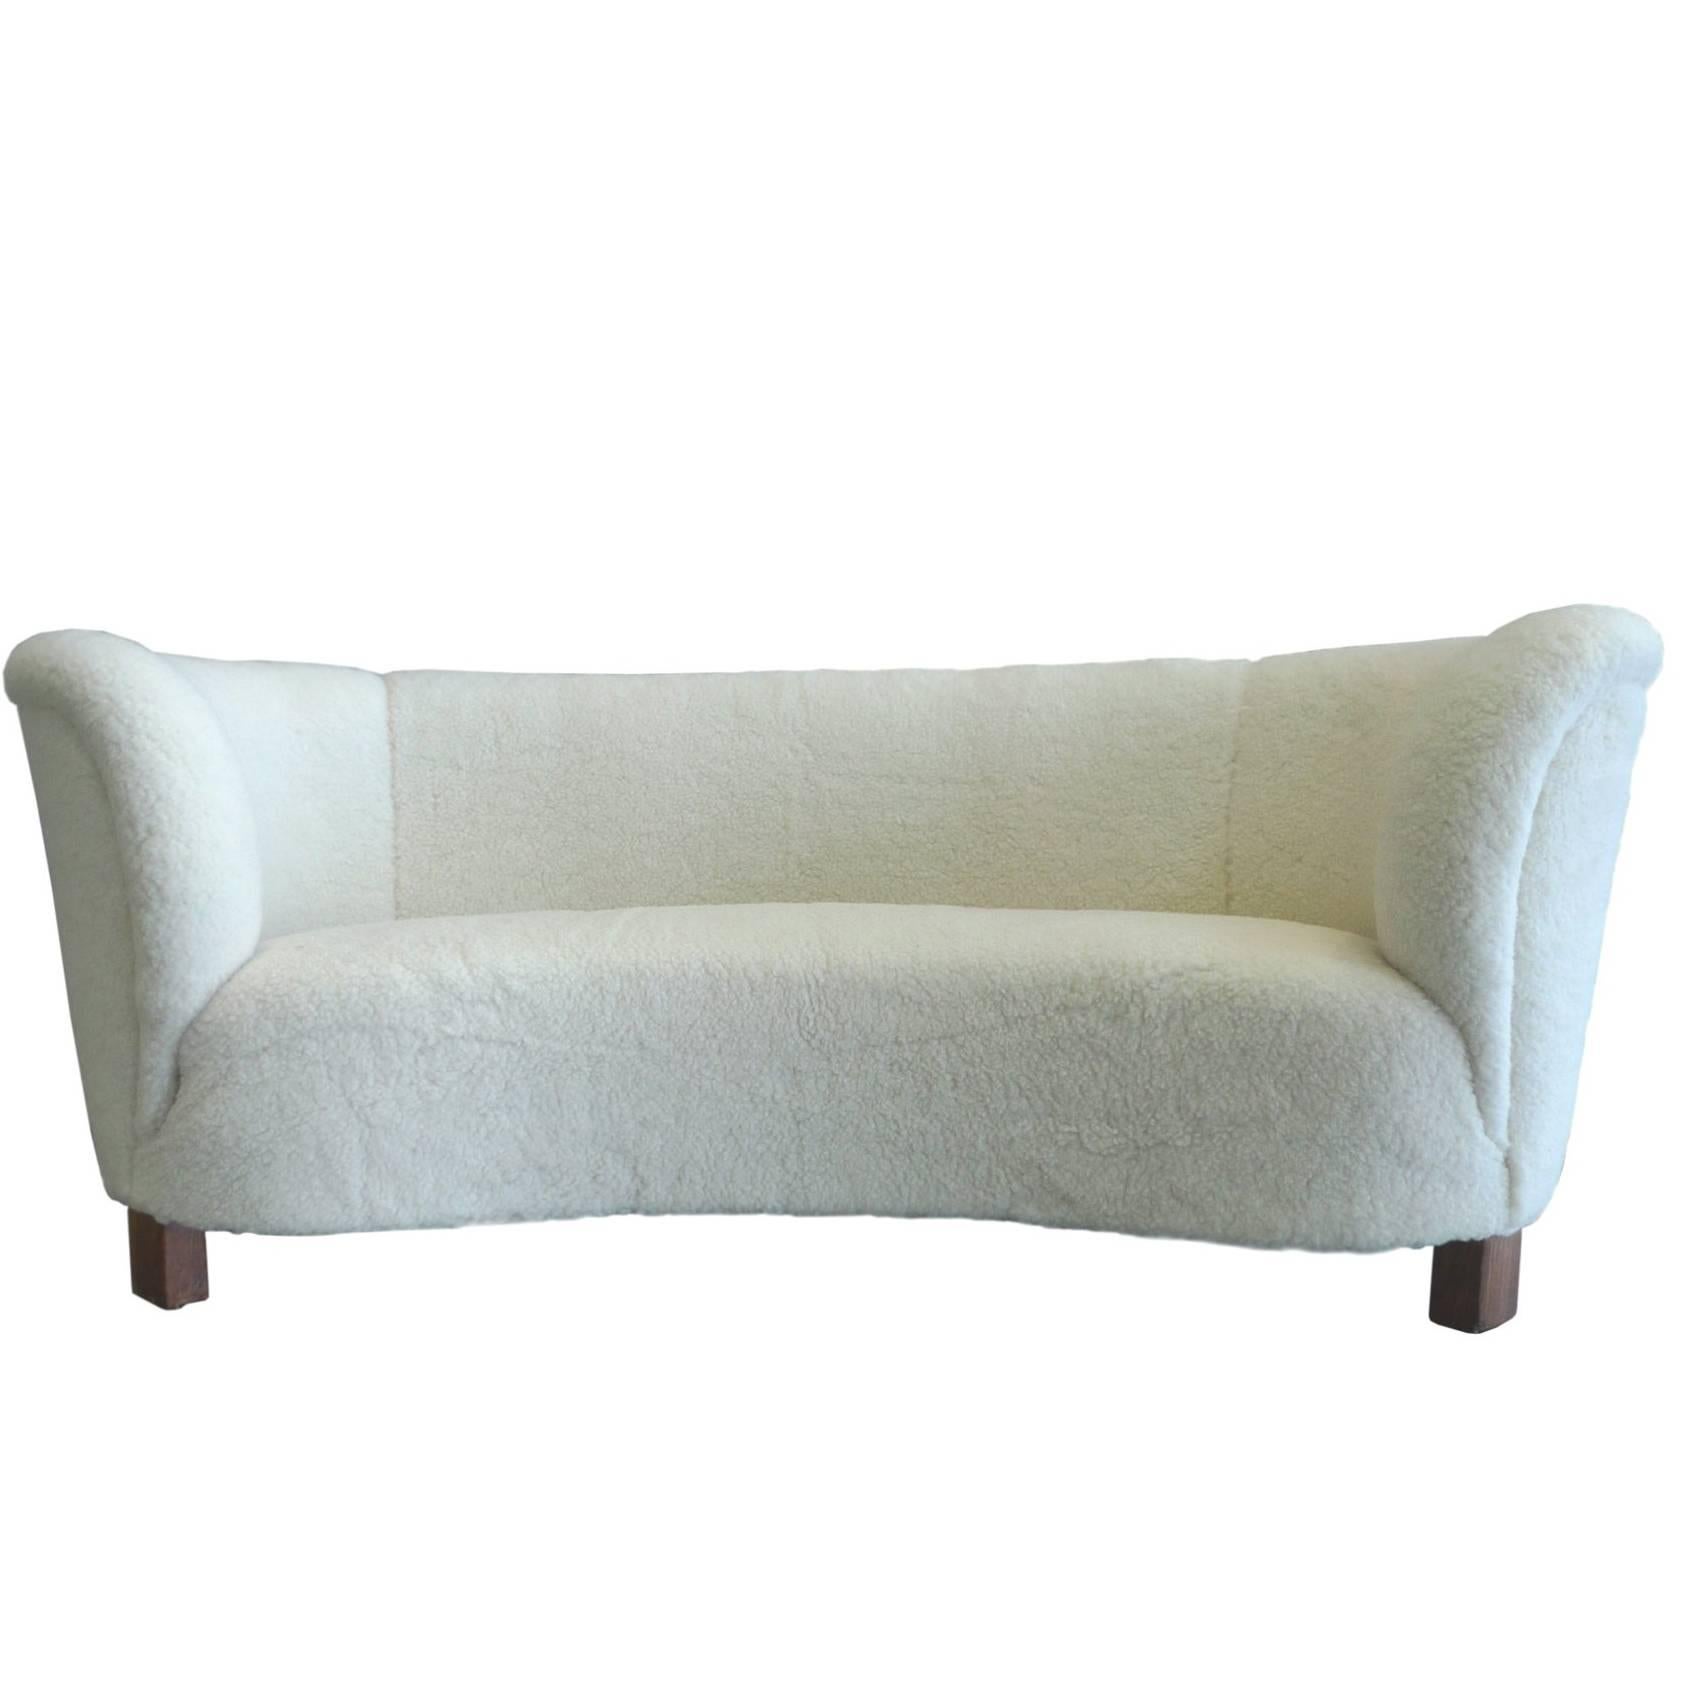 1940s Danish Sofa by Slagelse Mobelvaerk, Reupholstered in Lambs Wool